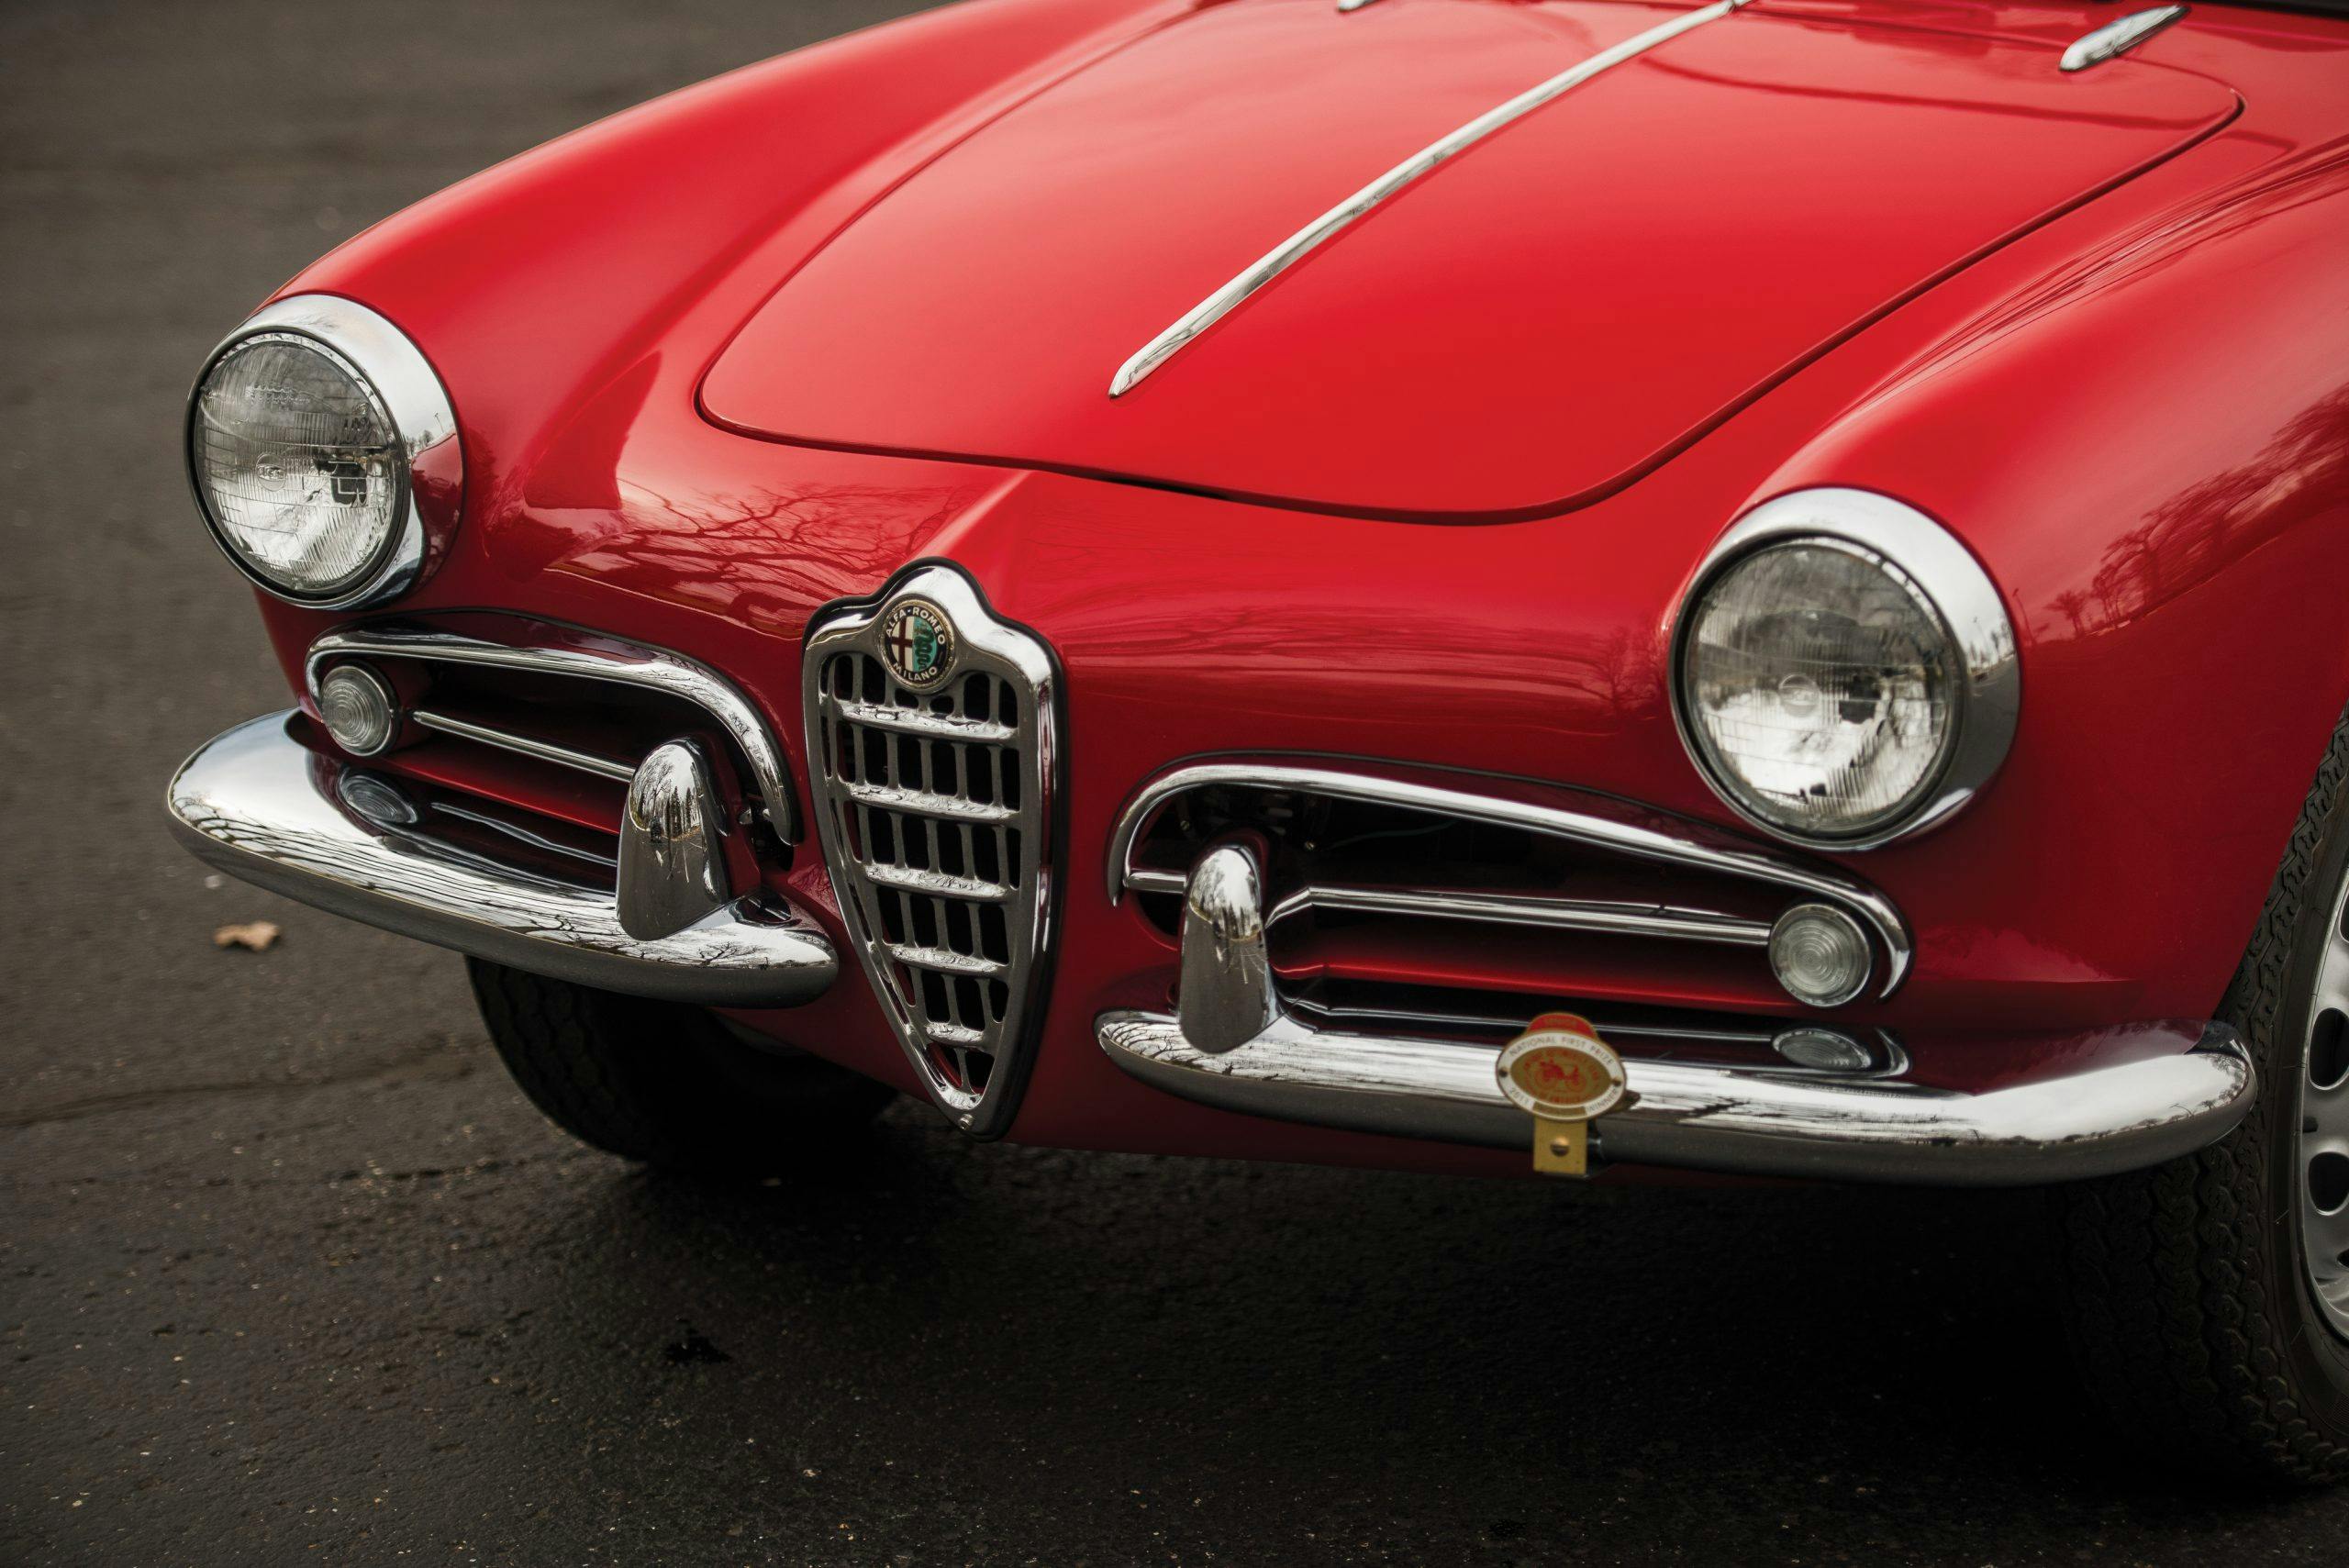 1959 Alfa Romeo Giulietta Spider front end